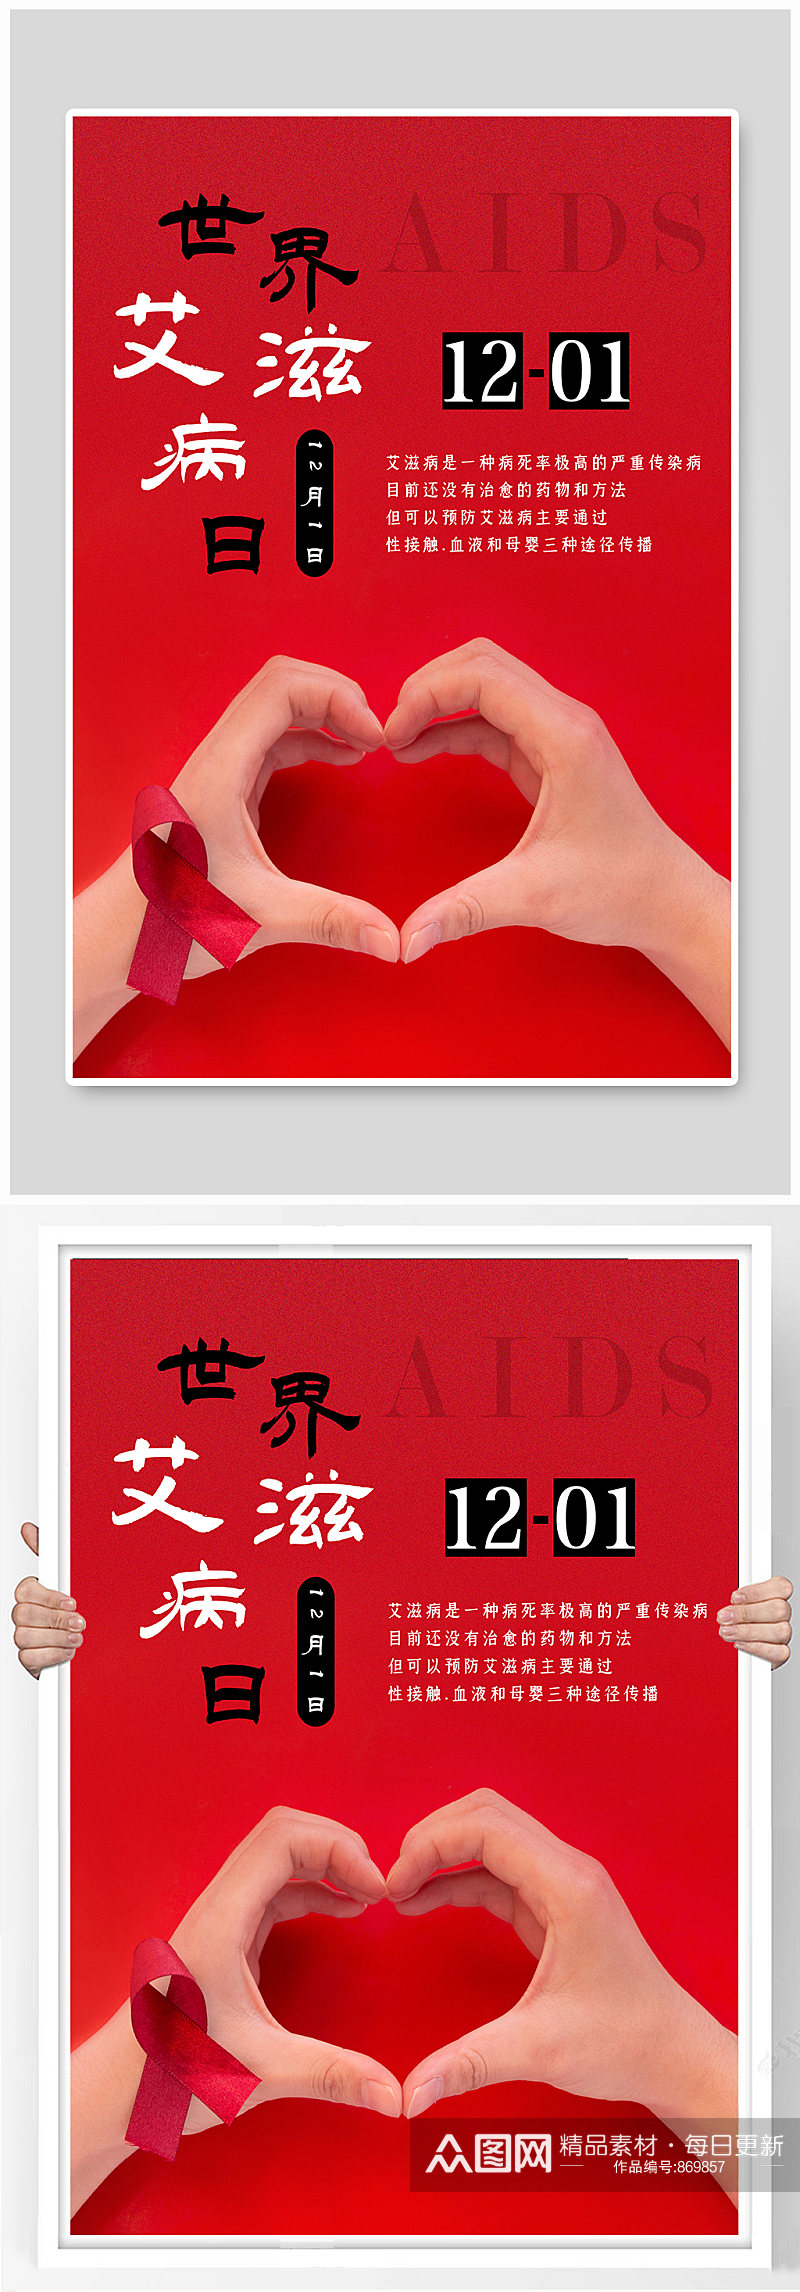 简约世界艾滋病日公益海报素材